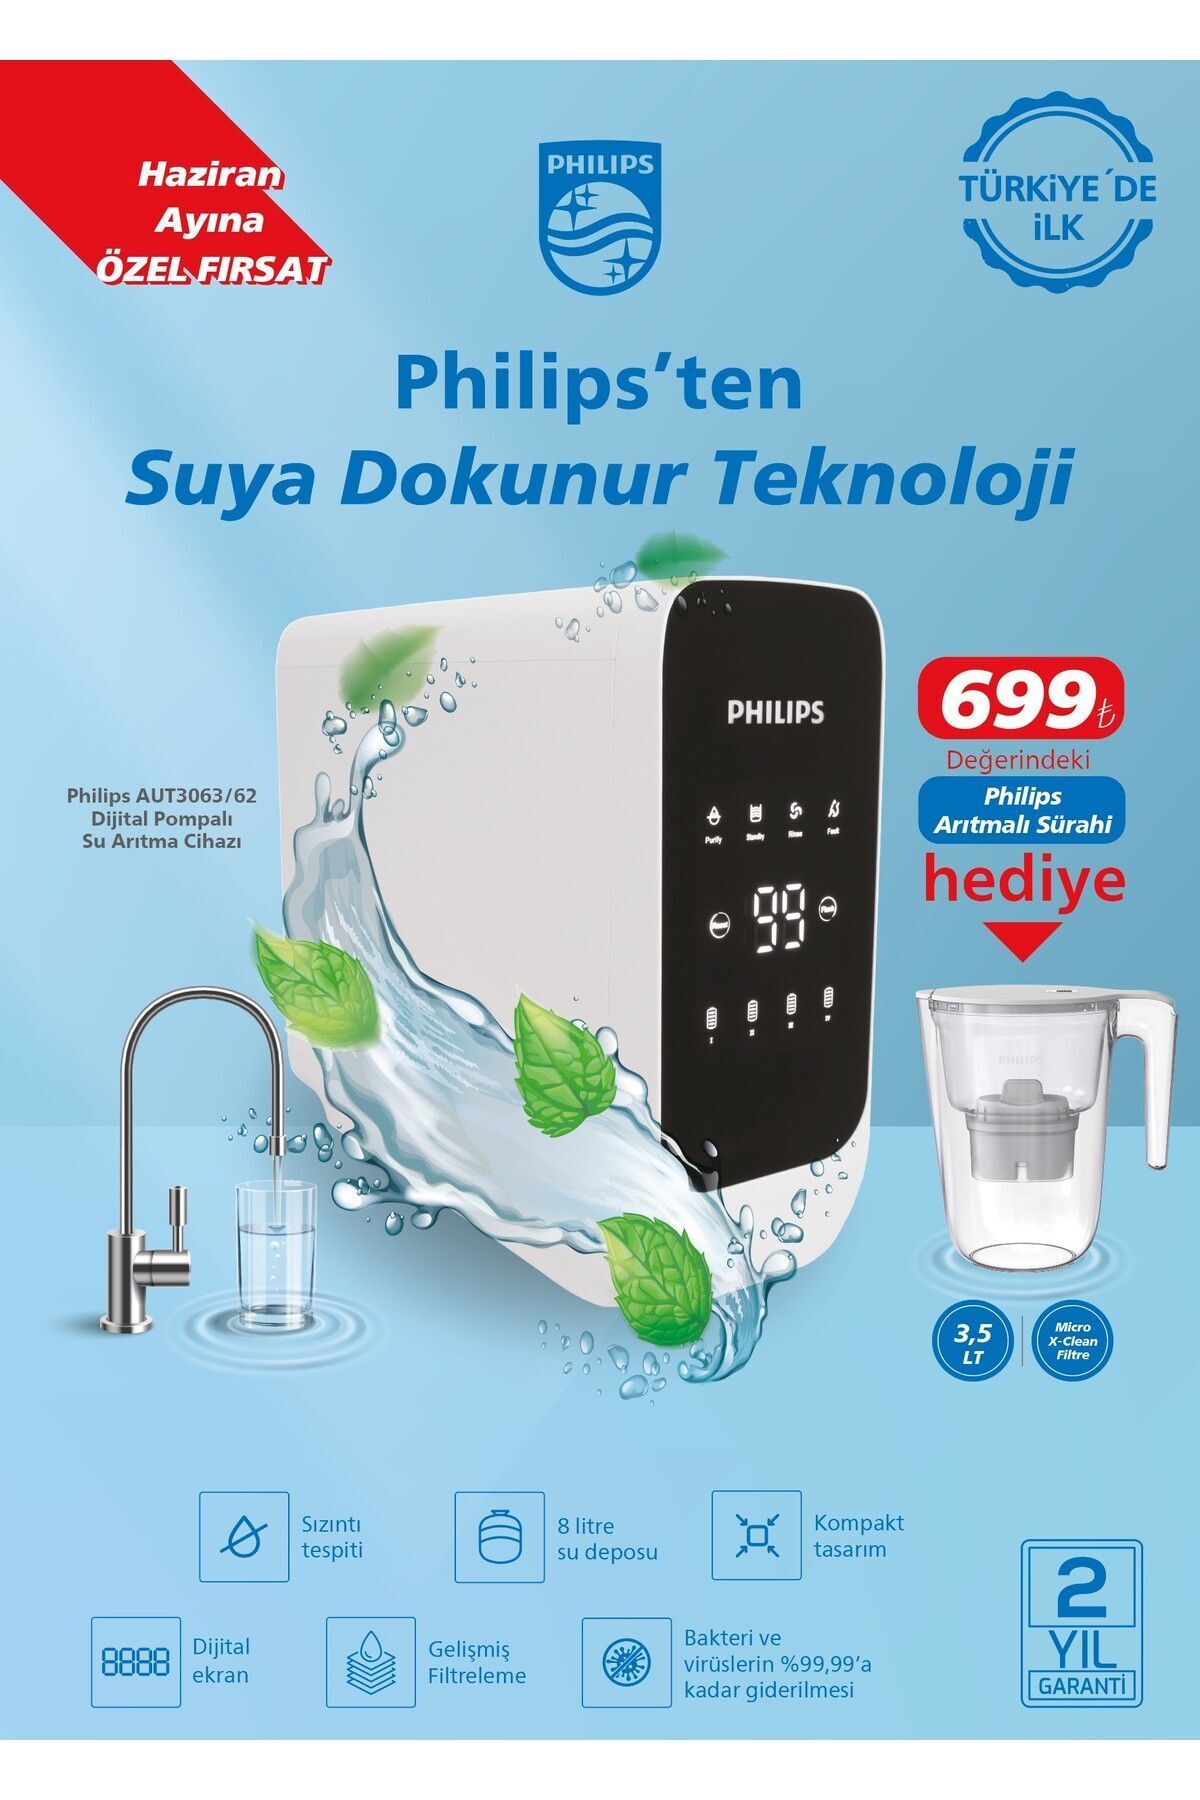 Philips Aut3063/62 Dijital Pompalı Su Arıtma Cihazı (ARITMALI SÜRAHİ HEDİYELİ)